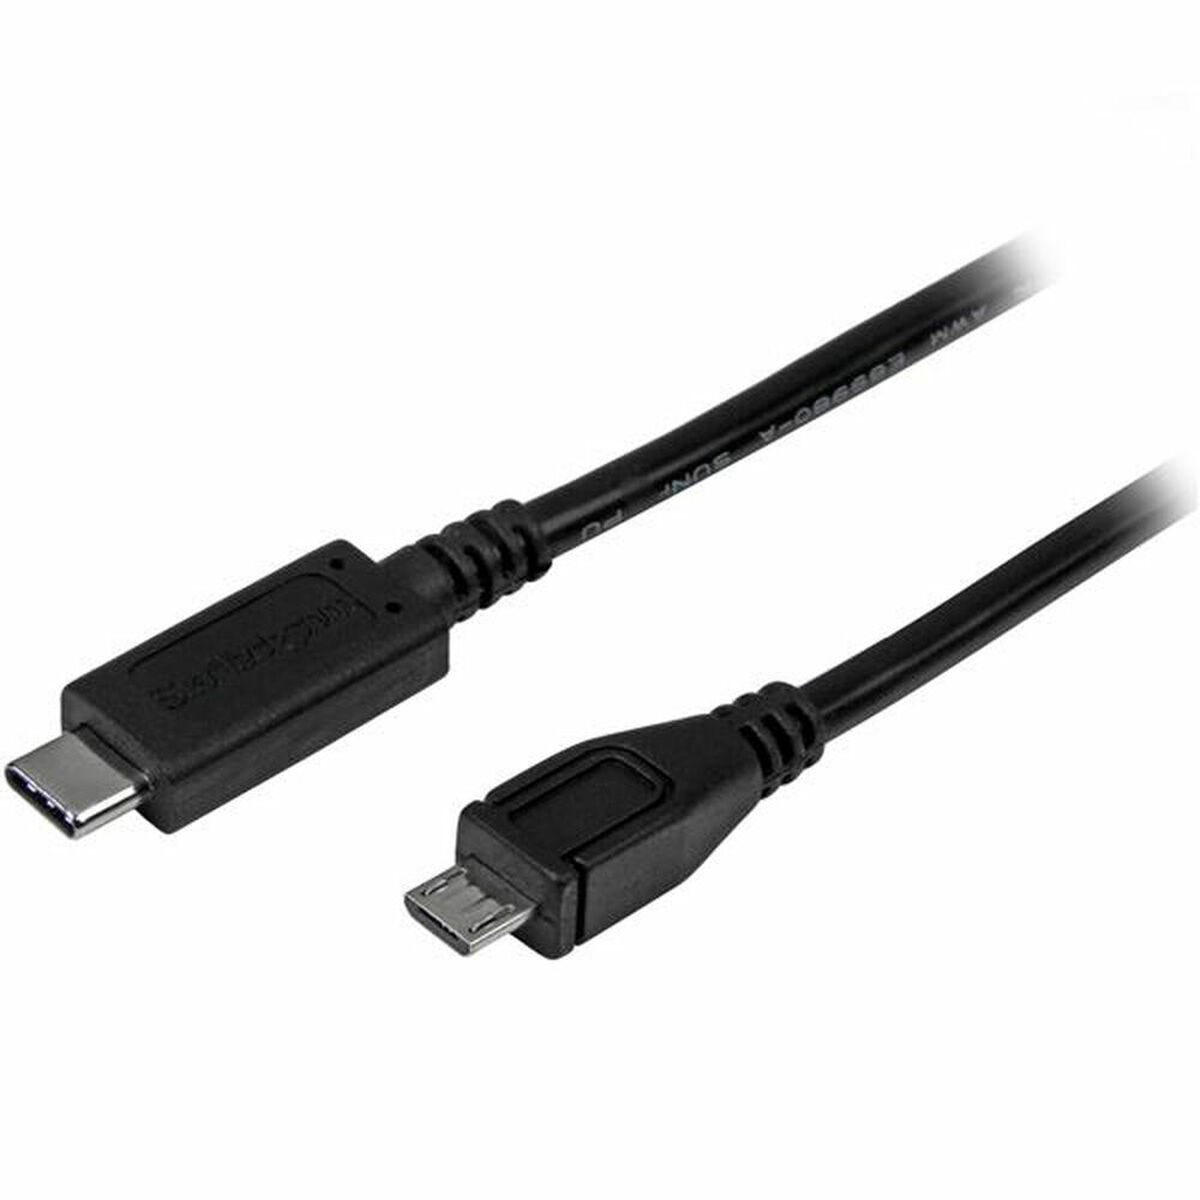 Startech : ADAPTATEUR USB 2.0 USB TYPE-C VERS MICRO USB - M pour